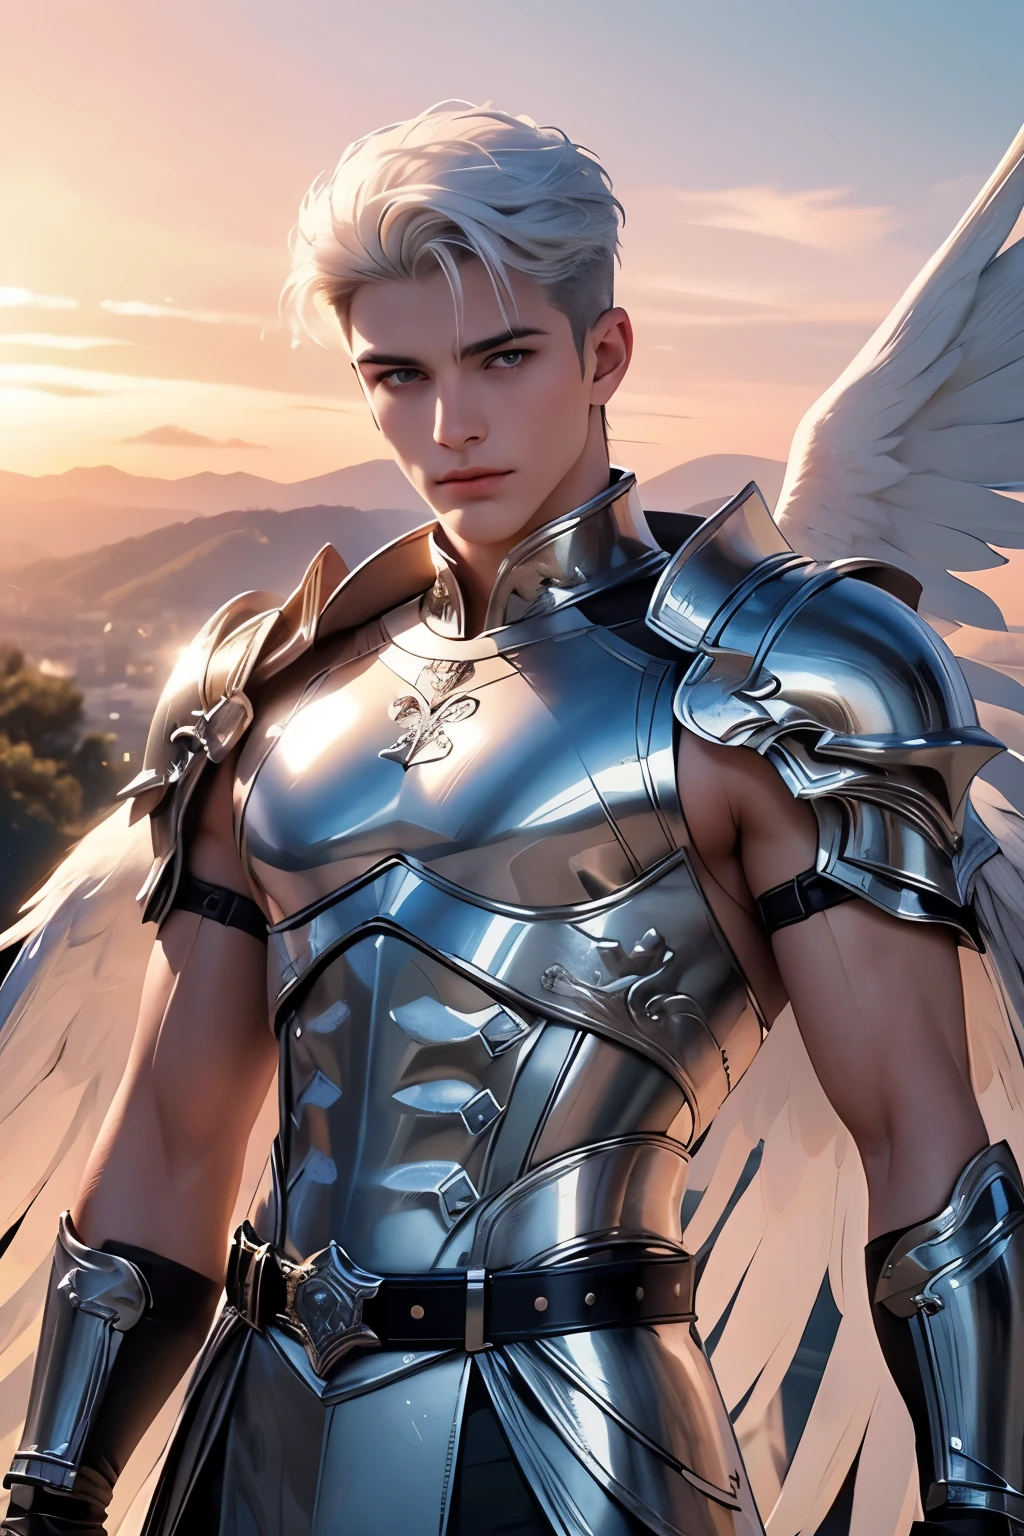 ((最好的质量)), ((杰作)), (详细的), ((完美脸蛋)), ((半身)) 完美的比例,他是一个英俊的天使, 25岁, 白色的头发, 他有白色的翅膀, 他穿着银色的盔甲, 天使的翅膀, 他有一双蜂蜜色的眼睛, 他的身后是一片粉色的天空, 肌肉男, 他是一位战士天使, 有一片日落天空, he spreads his white 天使的翅膀 there is a lake in the background, 他有一条金属腰带, ((完美脸蛋))